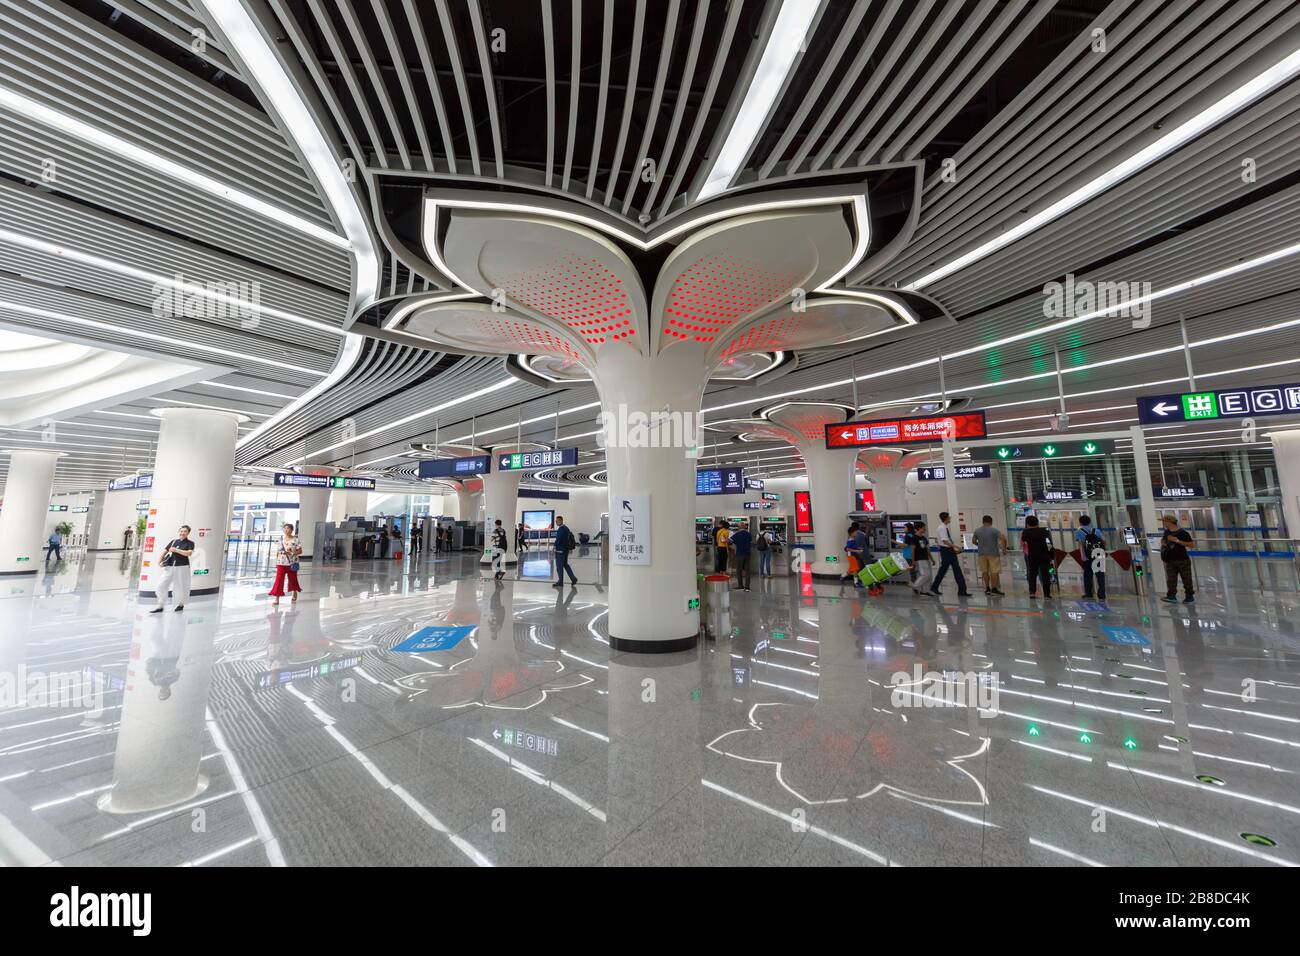 Pechino, Cina – 30 settembre 2019: Stazione della metropolitana MRT CaO Qiao Caoqiao Beijing Daxing Airport Express a Pechino, Cina. Foto Stock